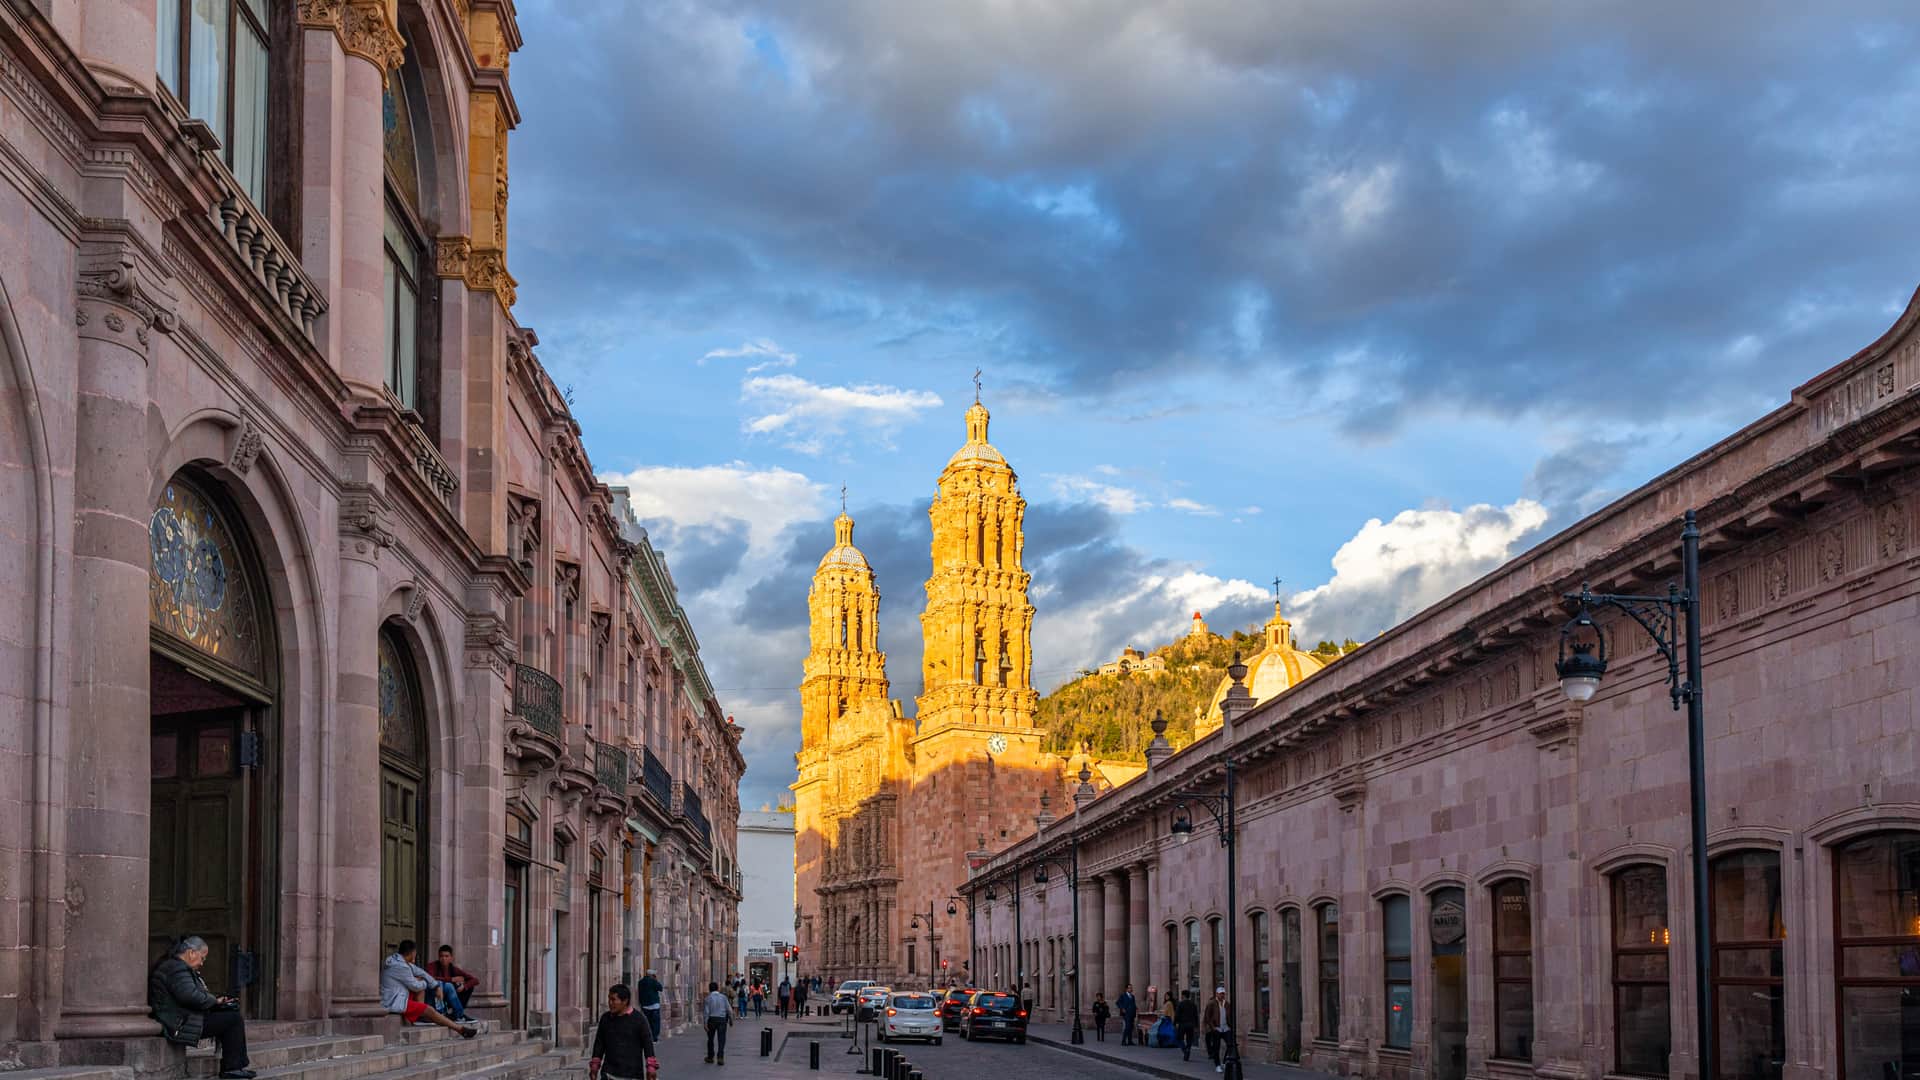 calles de la ciudad colonial de zacatecas de mexico donde se pueden encontrar sucursales de la empresa movistar